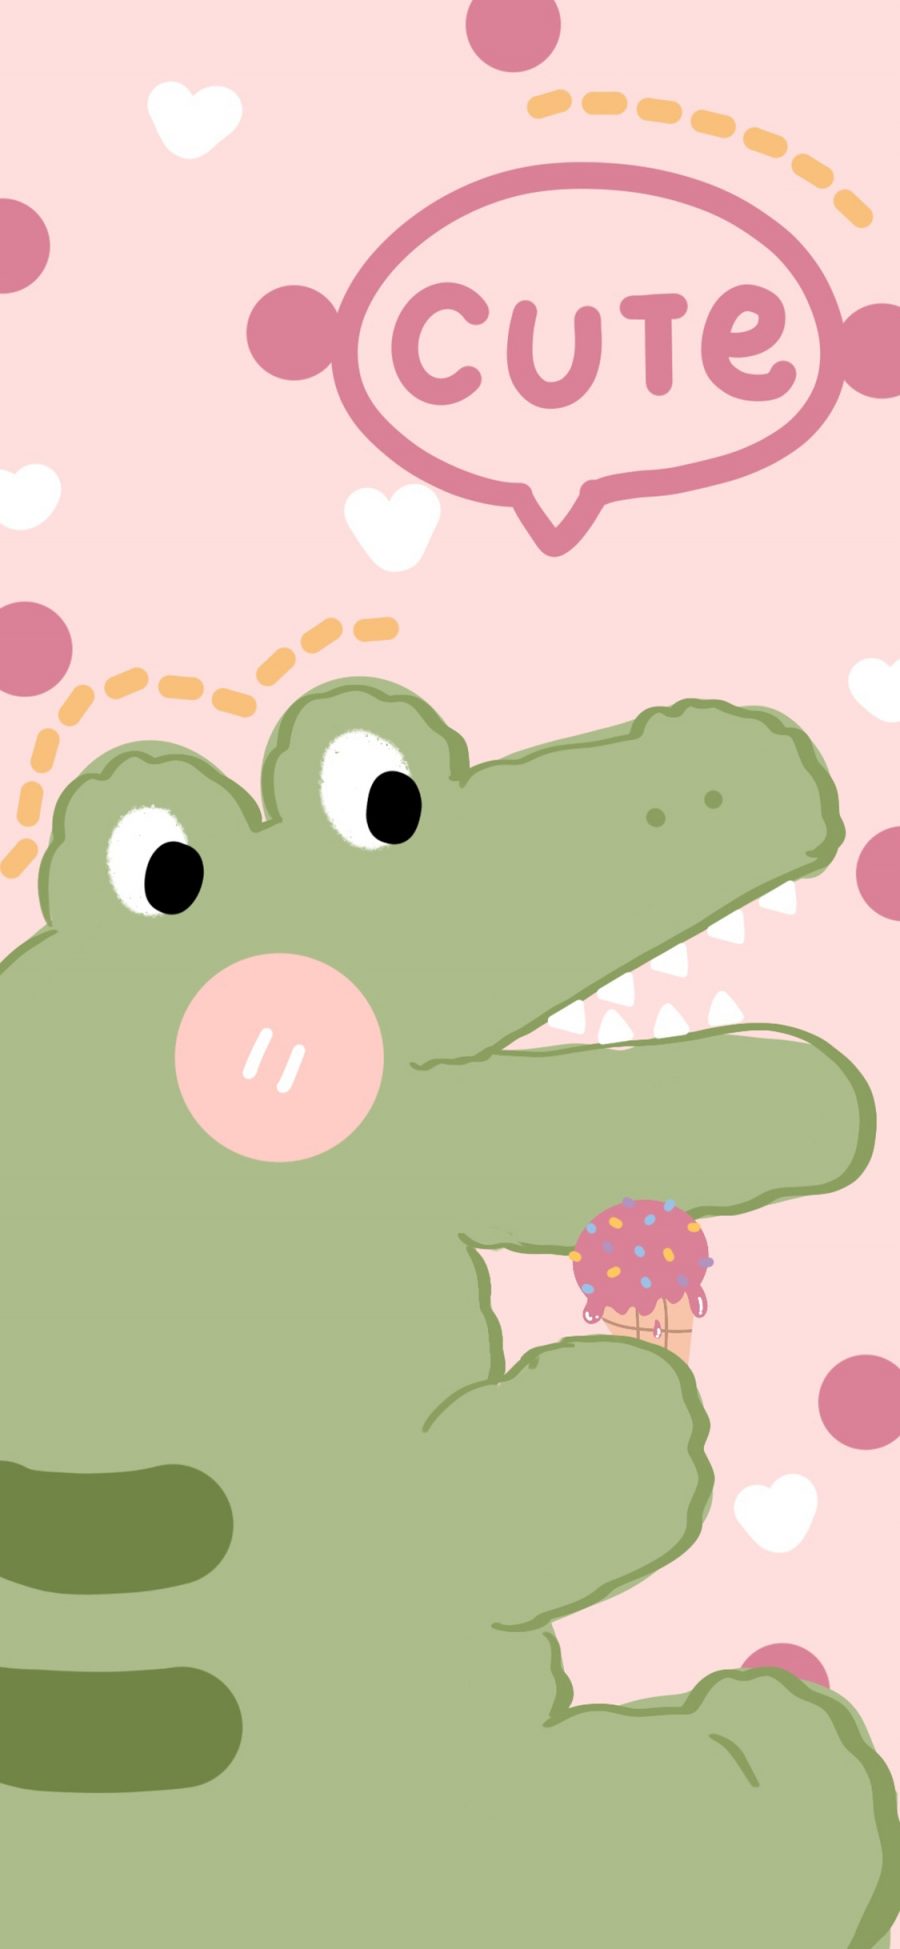 [2436×1125]可爱 小鳄鱼 cute 粉 卡通 苹果手机动漫壁纸图片